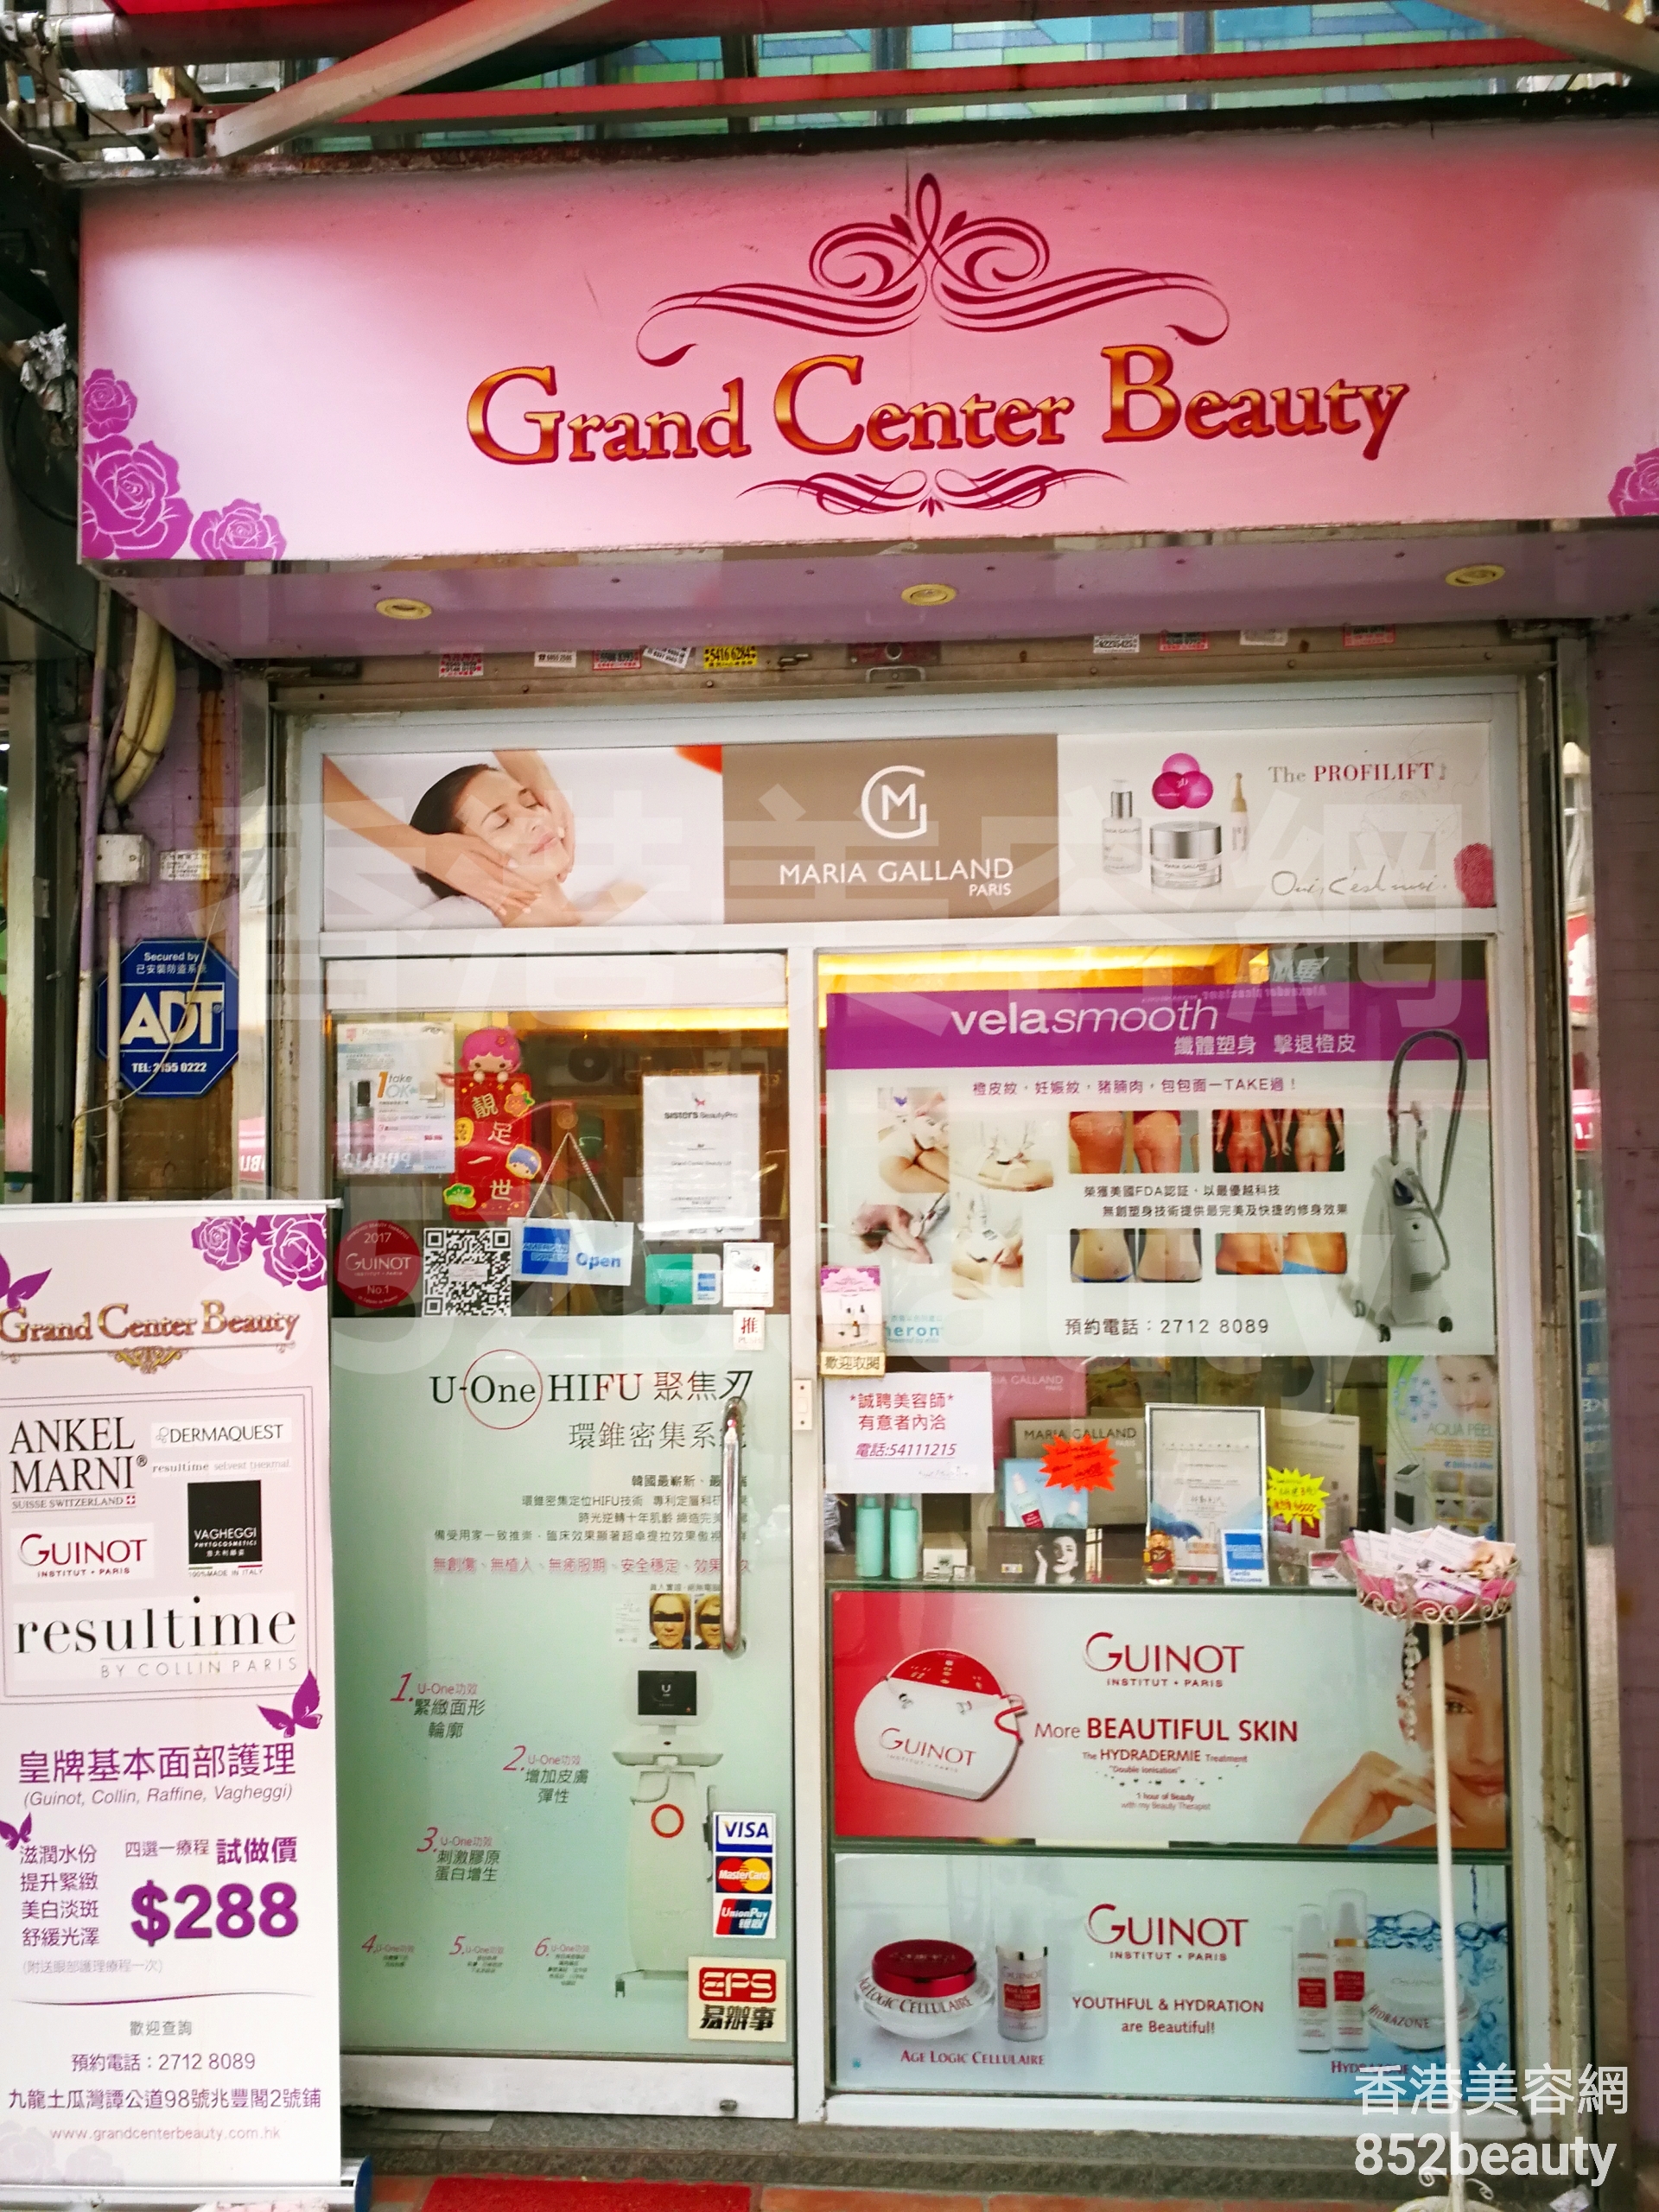 按摩/SPA: Grand Center Beauty